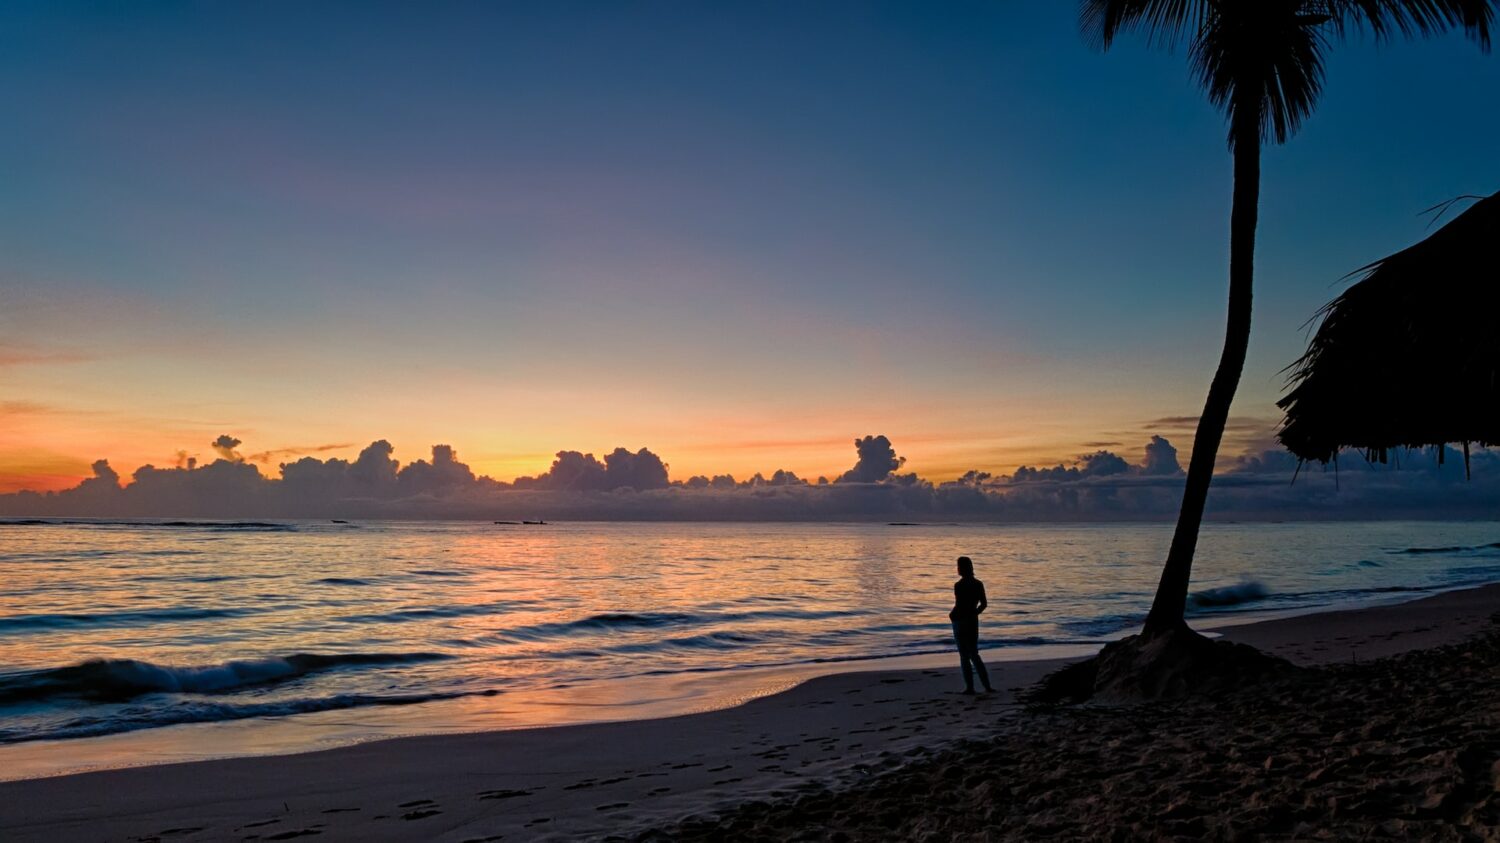 silhueta de uma pessoa ao pôr do sol na praia de Punta Cana, para ilustrar o post de chip celular República Dominicana, há uma palmeira bem alta atrás da pessoa, e o mar é calmo com poucas ondas e reflete as cores alaranjadas do céu